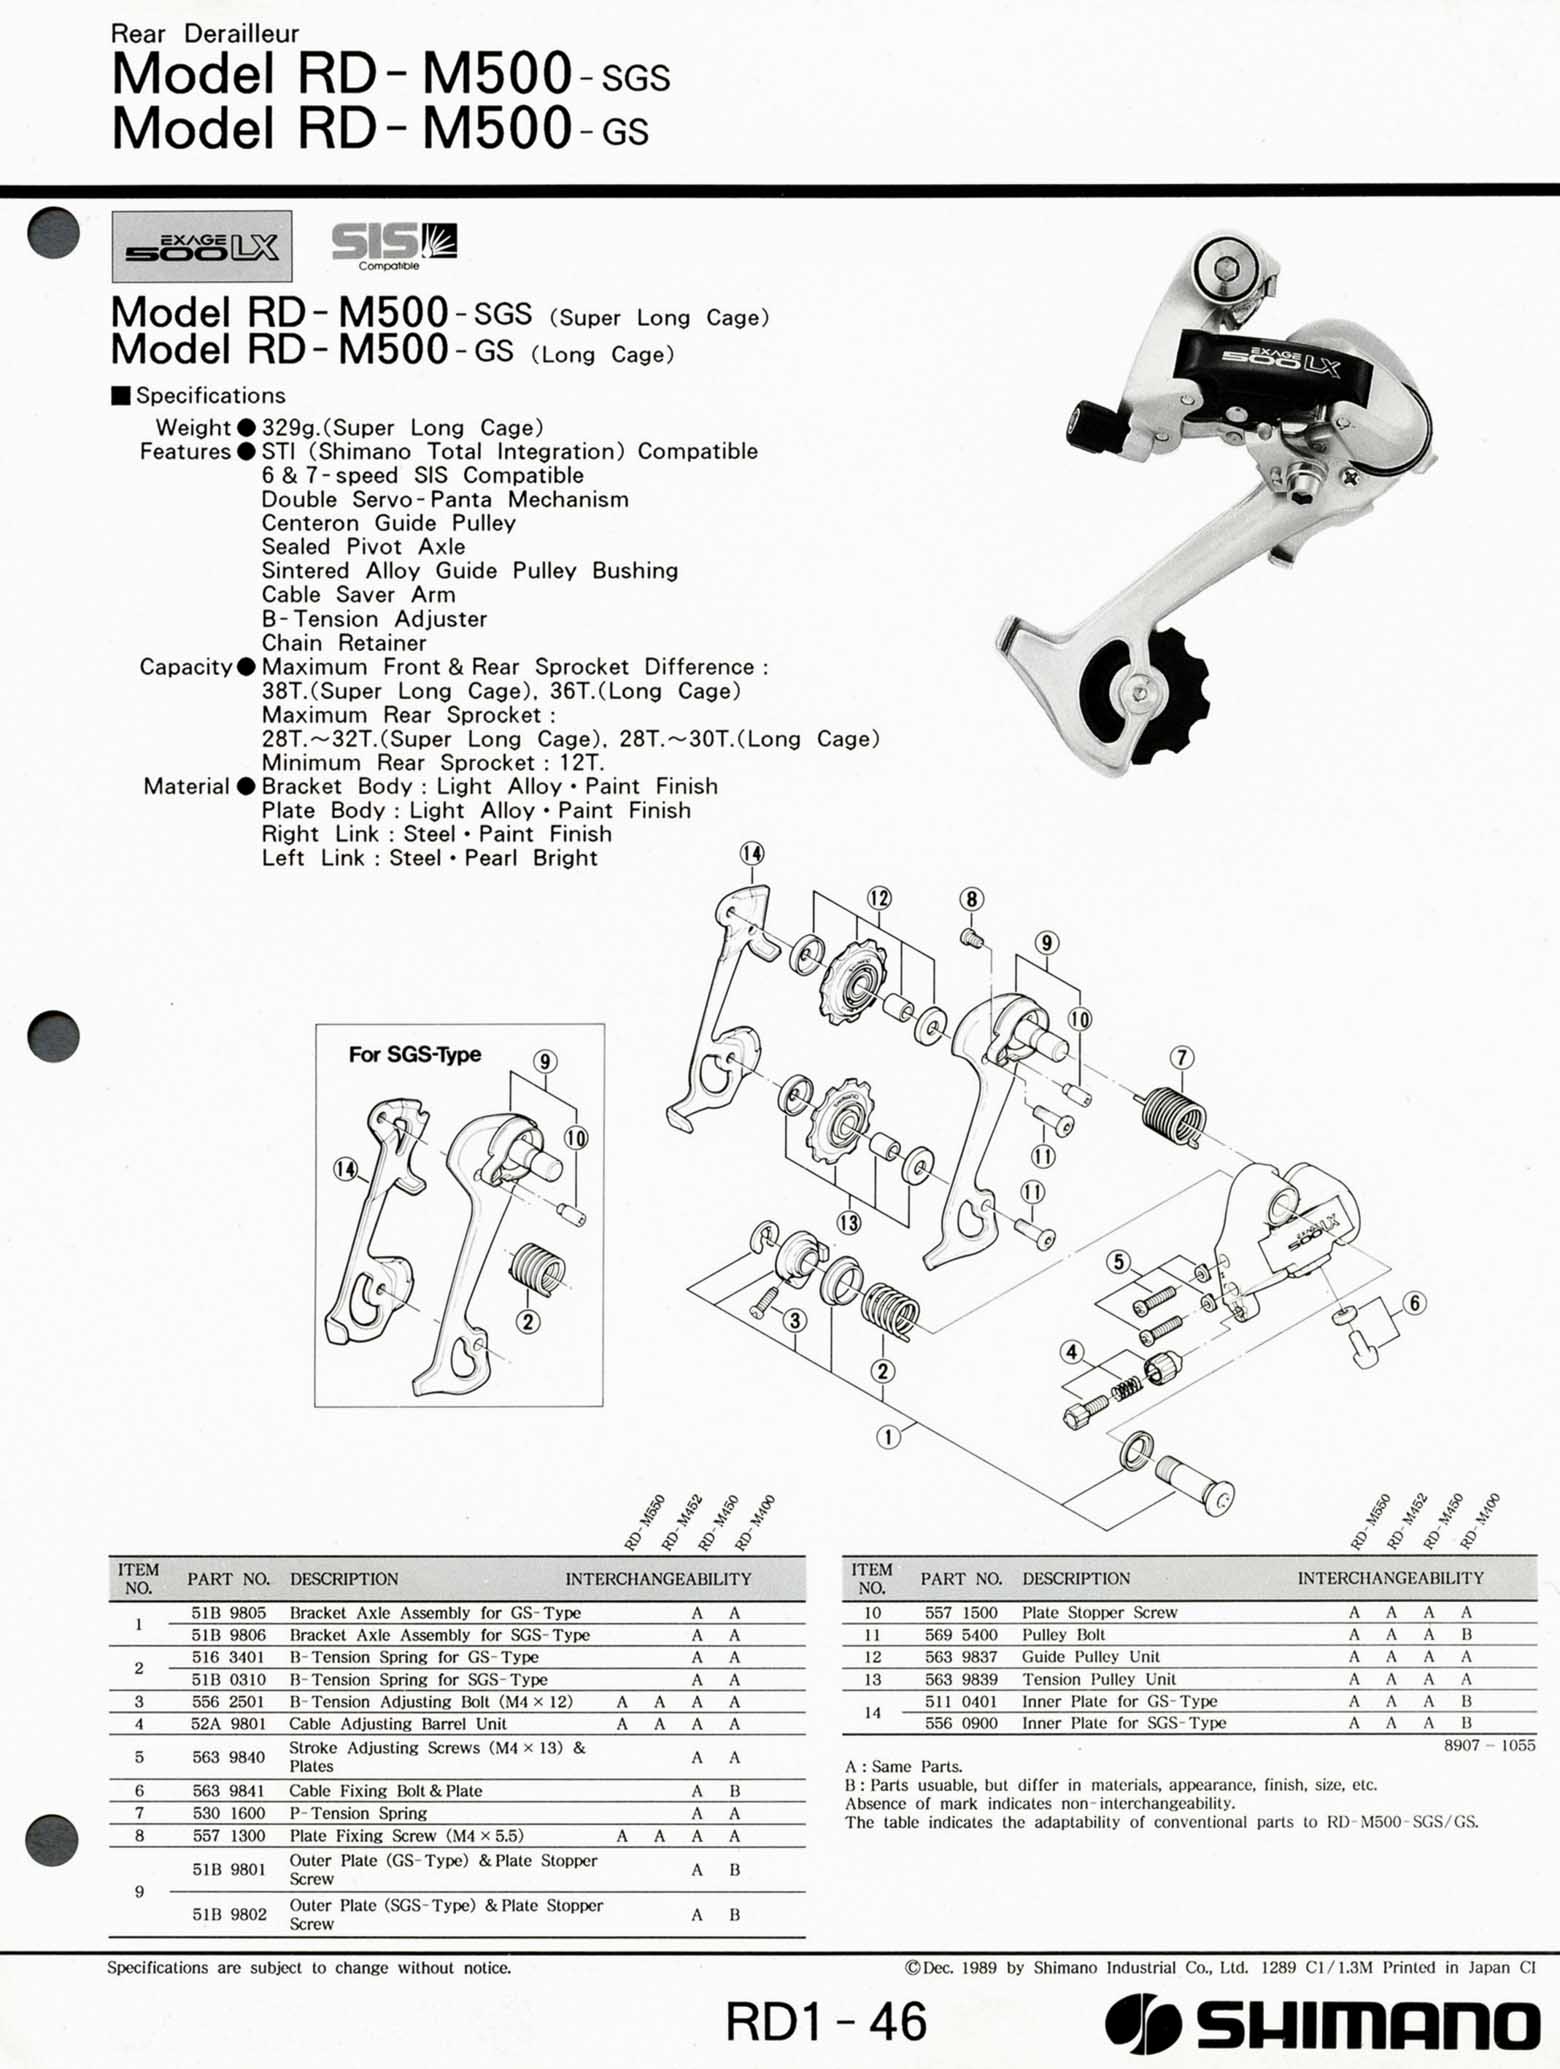 Shimano Bicycle Parts - 1990 scan 09 main image